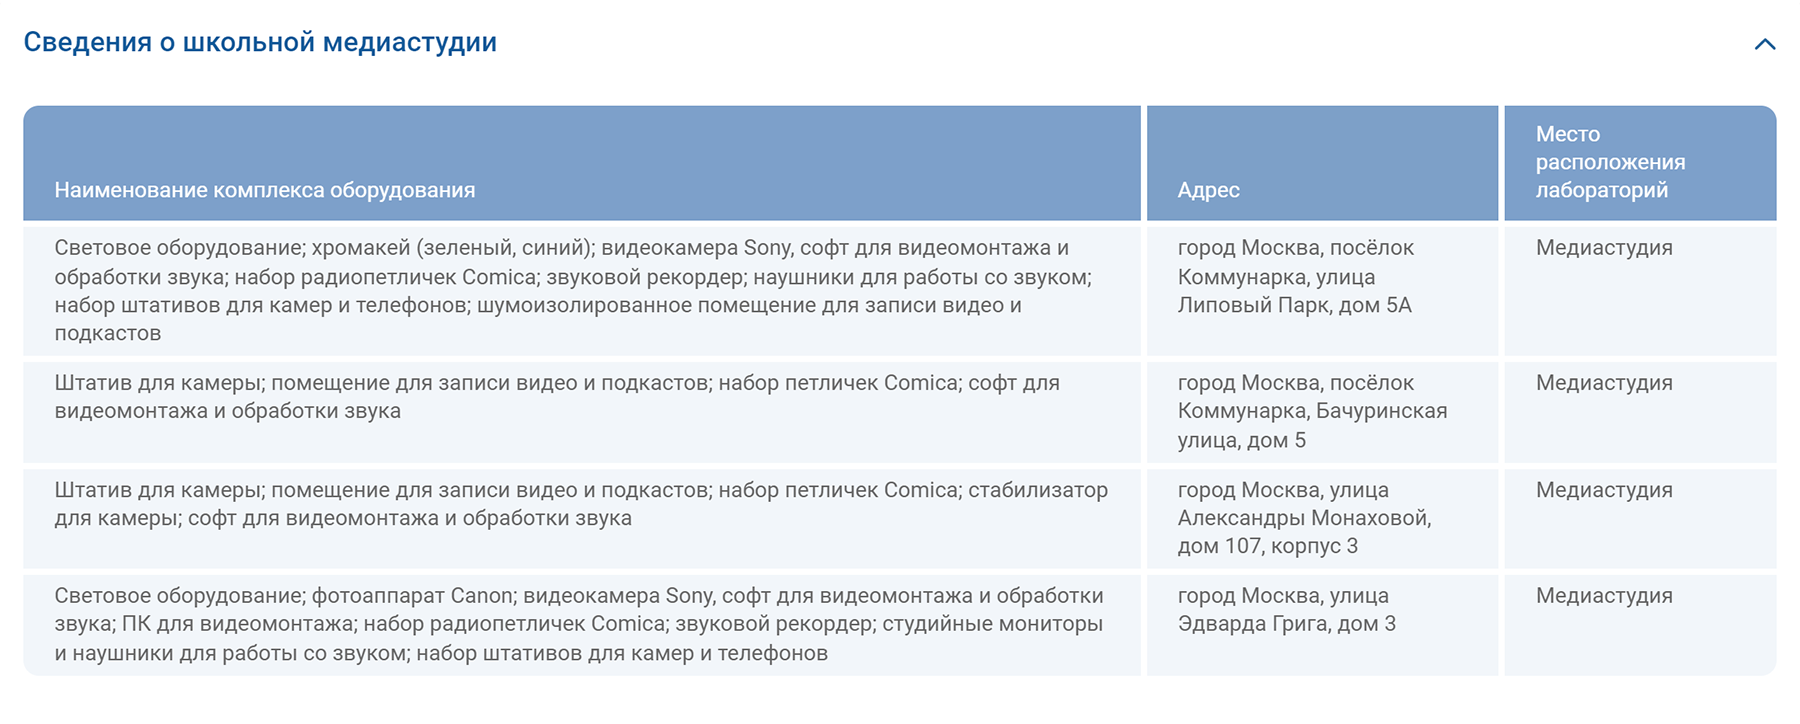 Список оборудования в медиастудии. Источник: mskobr.ru